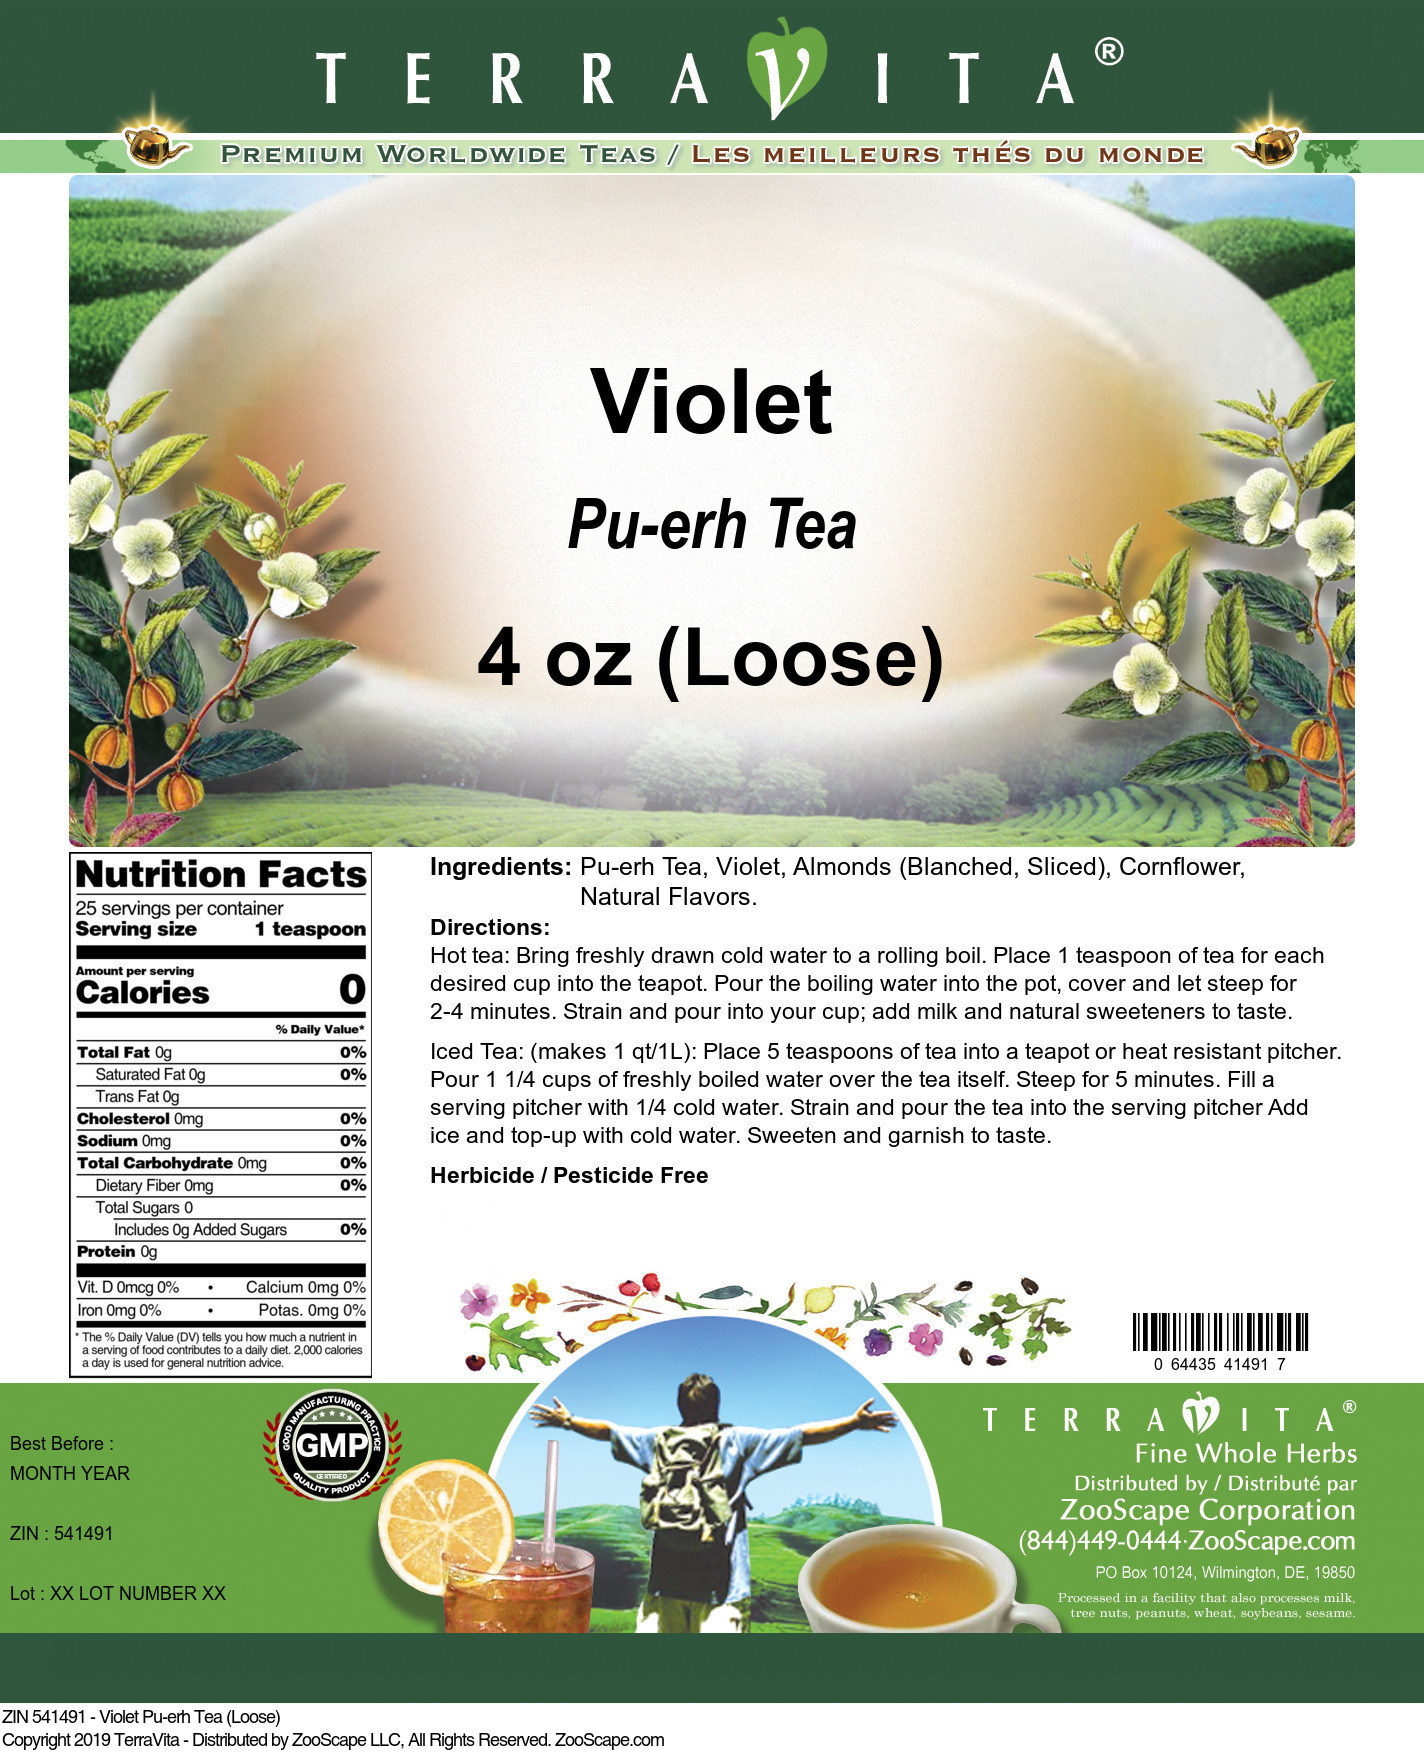 Violet Pu-erh Tea (Loose) - Label